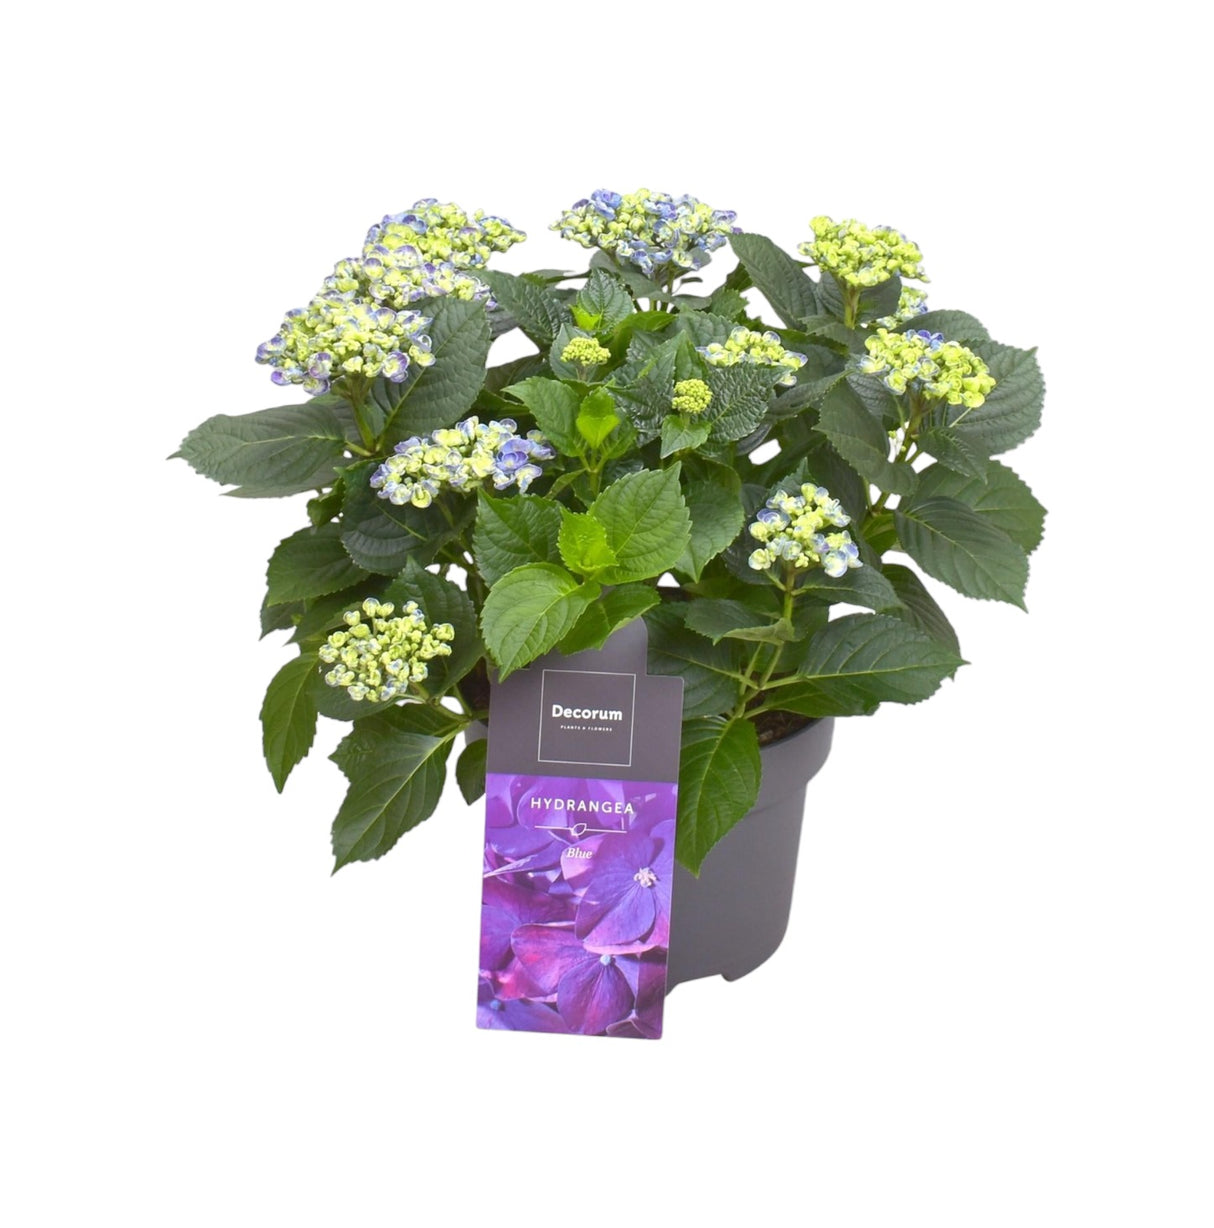 Hortensia curly parme 9 - 15 têtes - plante fleurie d'extérieur